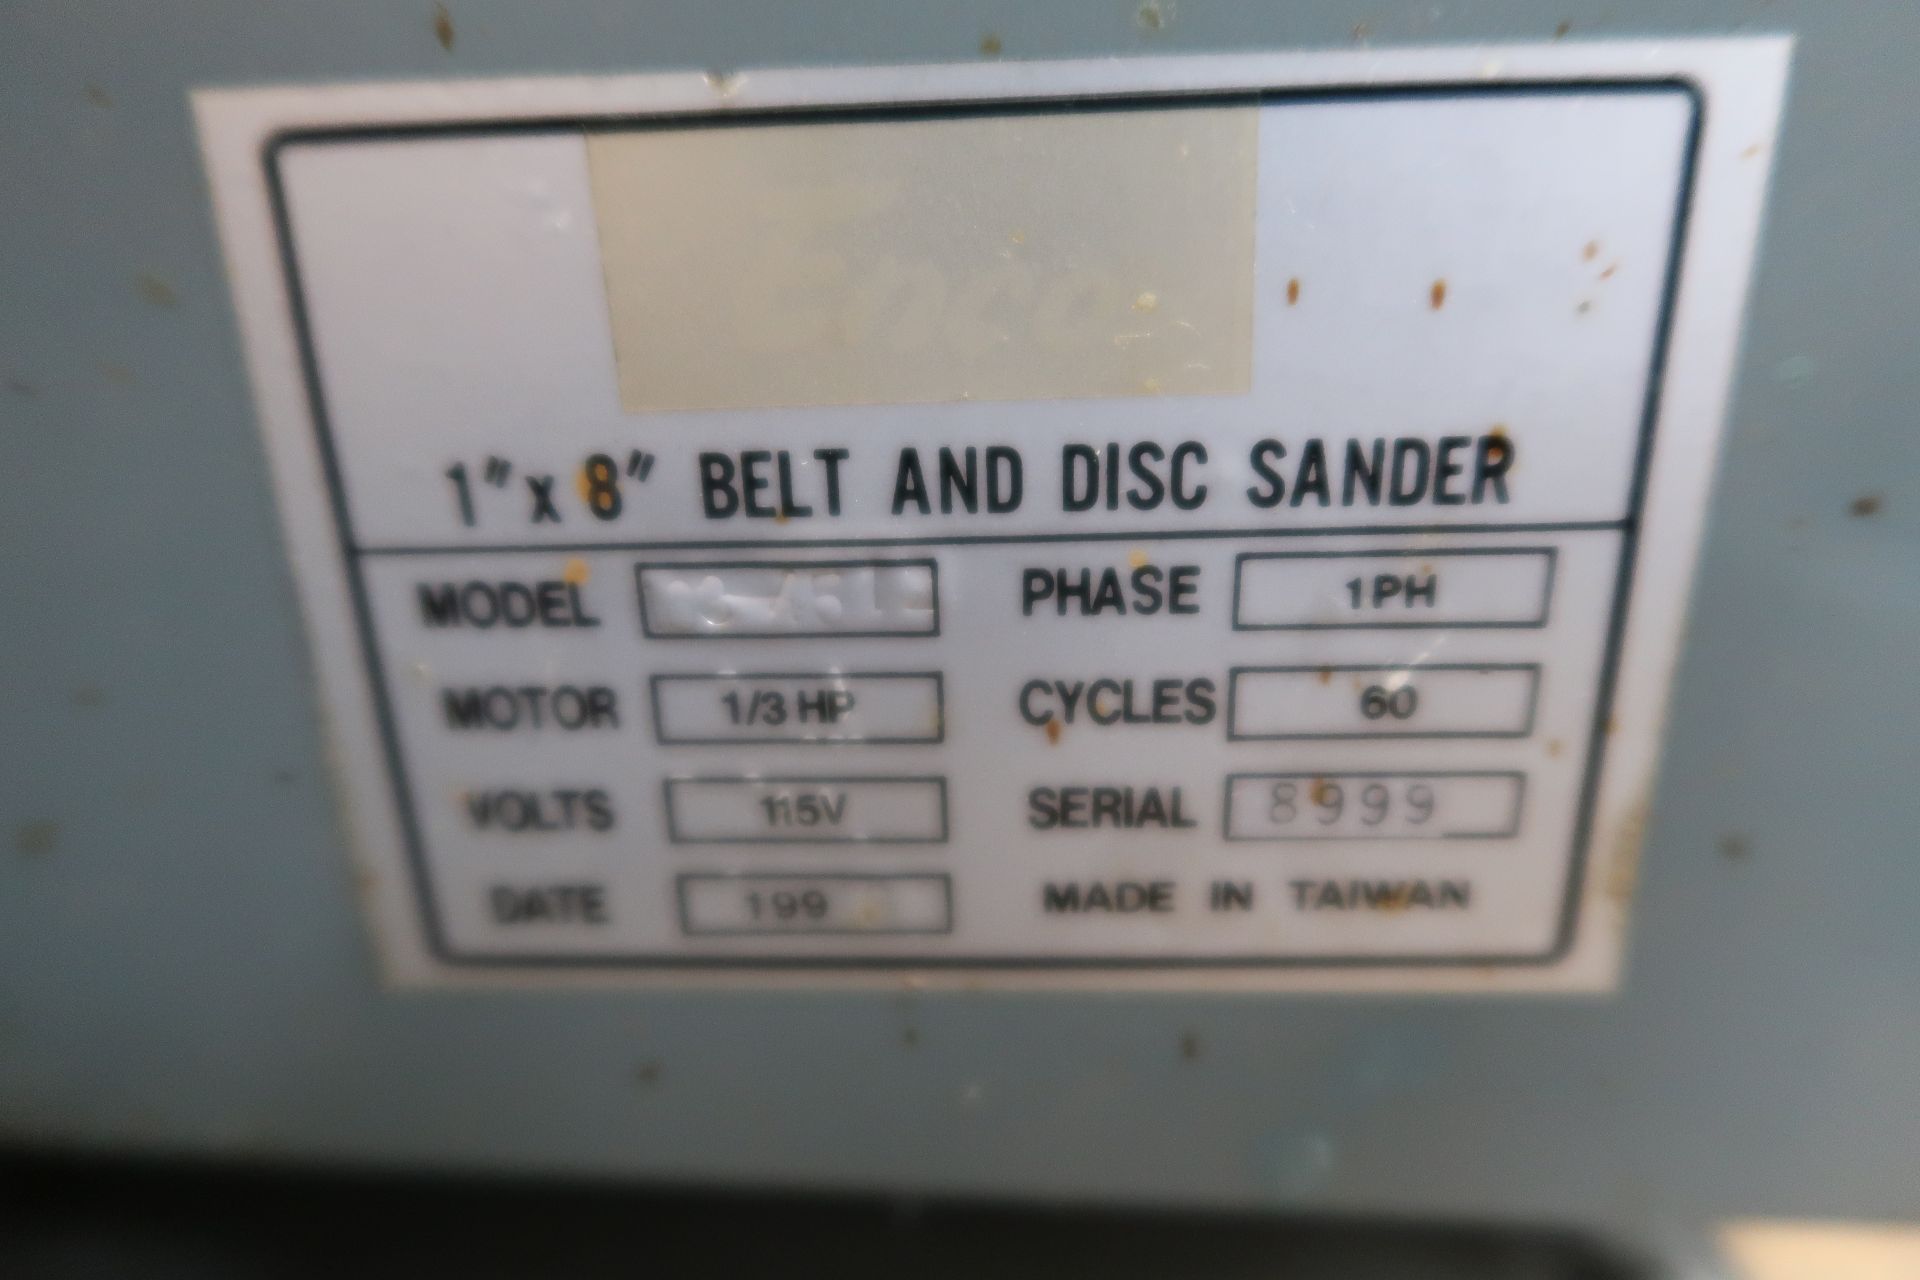 Import 1" Belt / 8" Disc Sander (SOLD AS-IS - NO WARRANTY) - Image 5 of 5